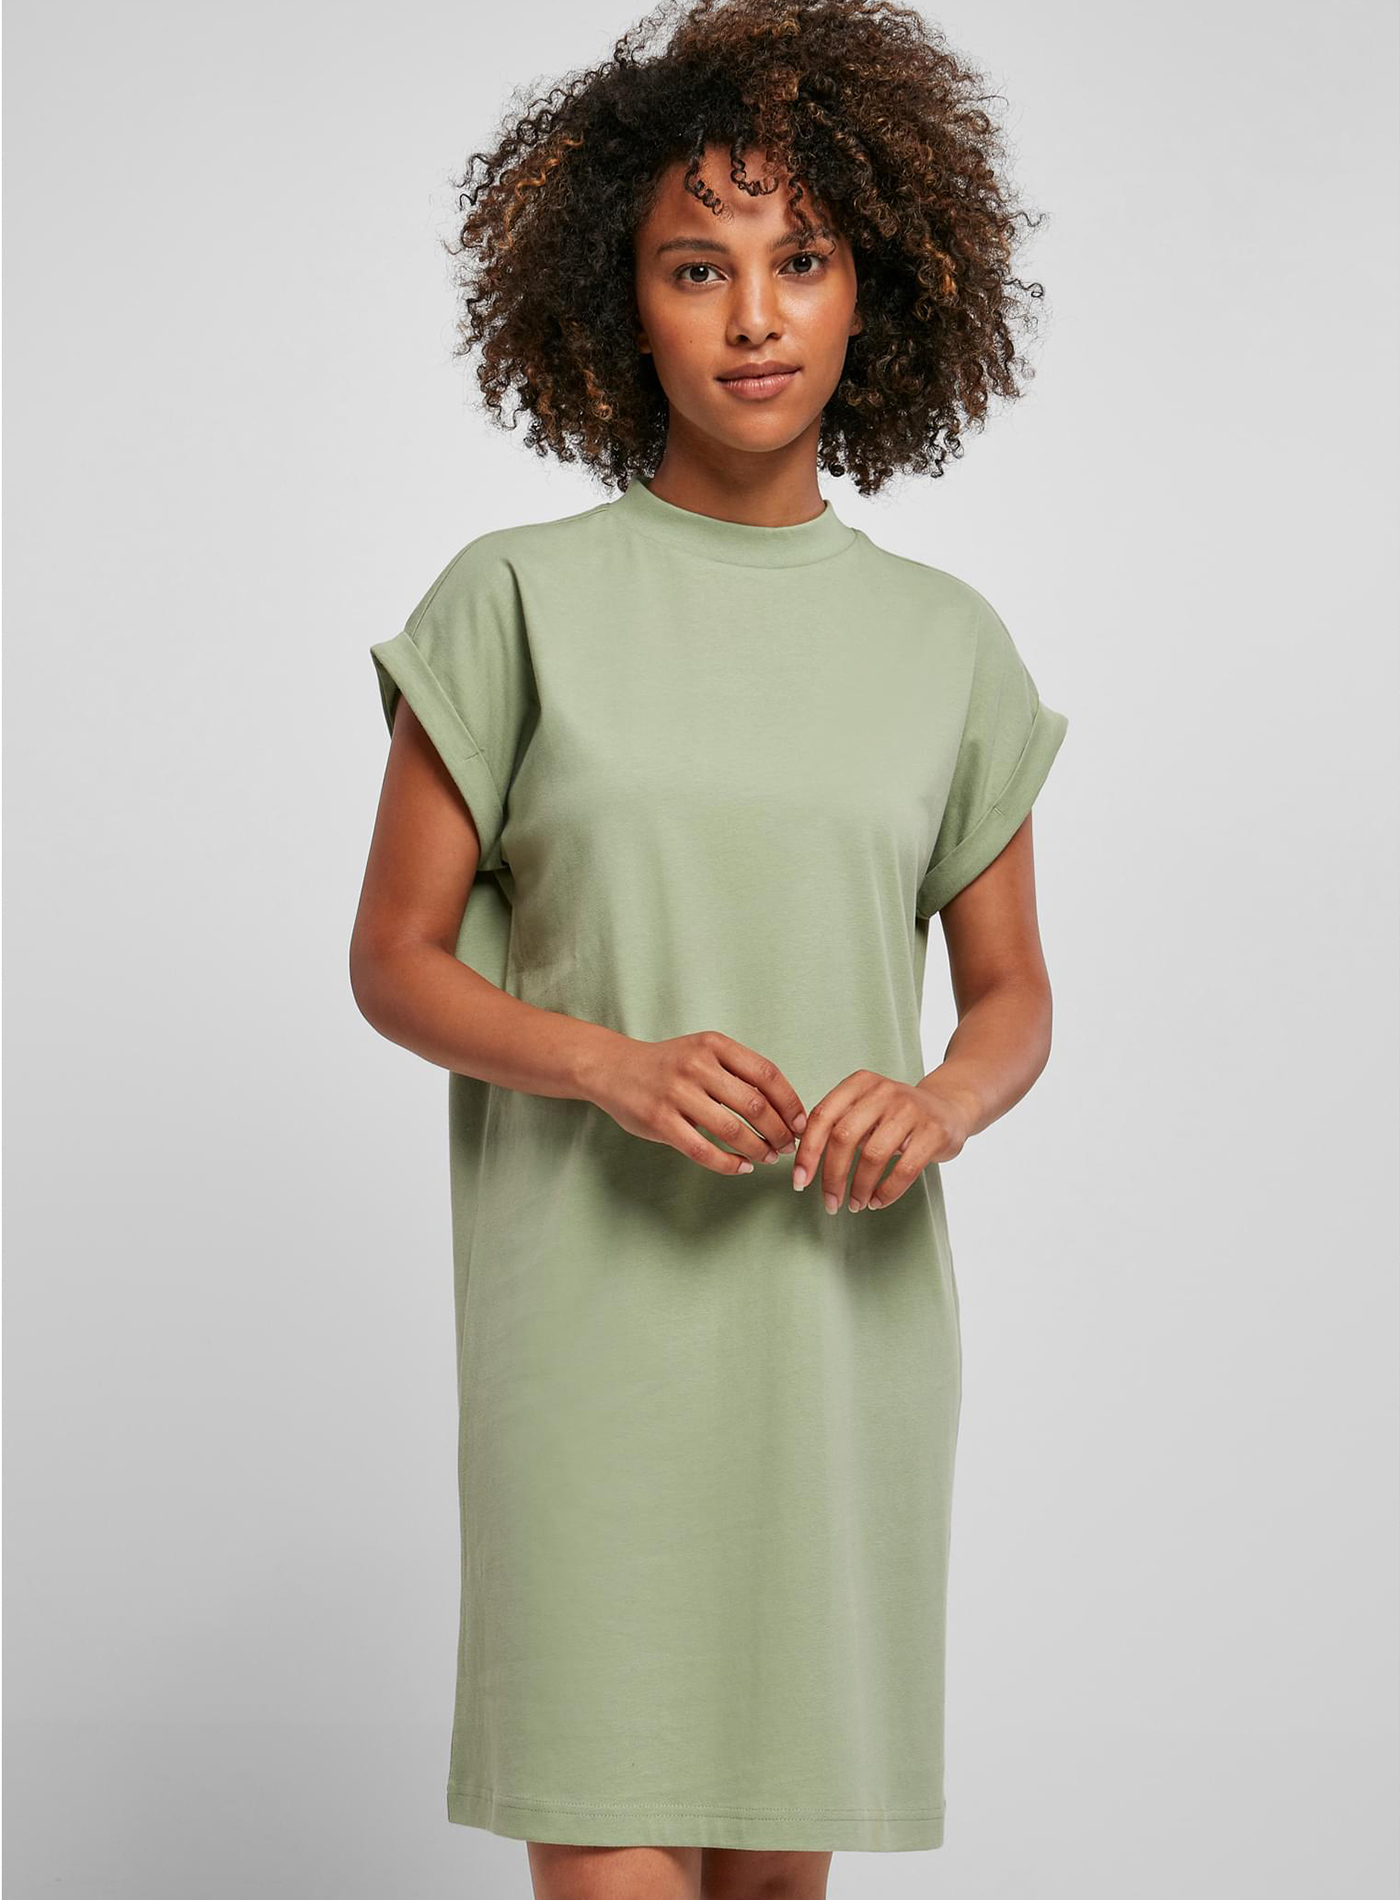 Dámské šaty Builted - Jemně zelená XL